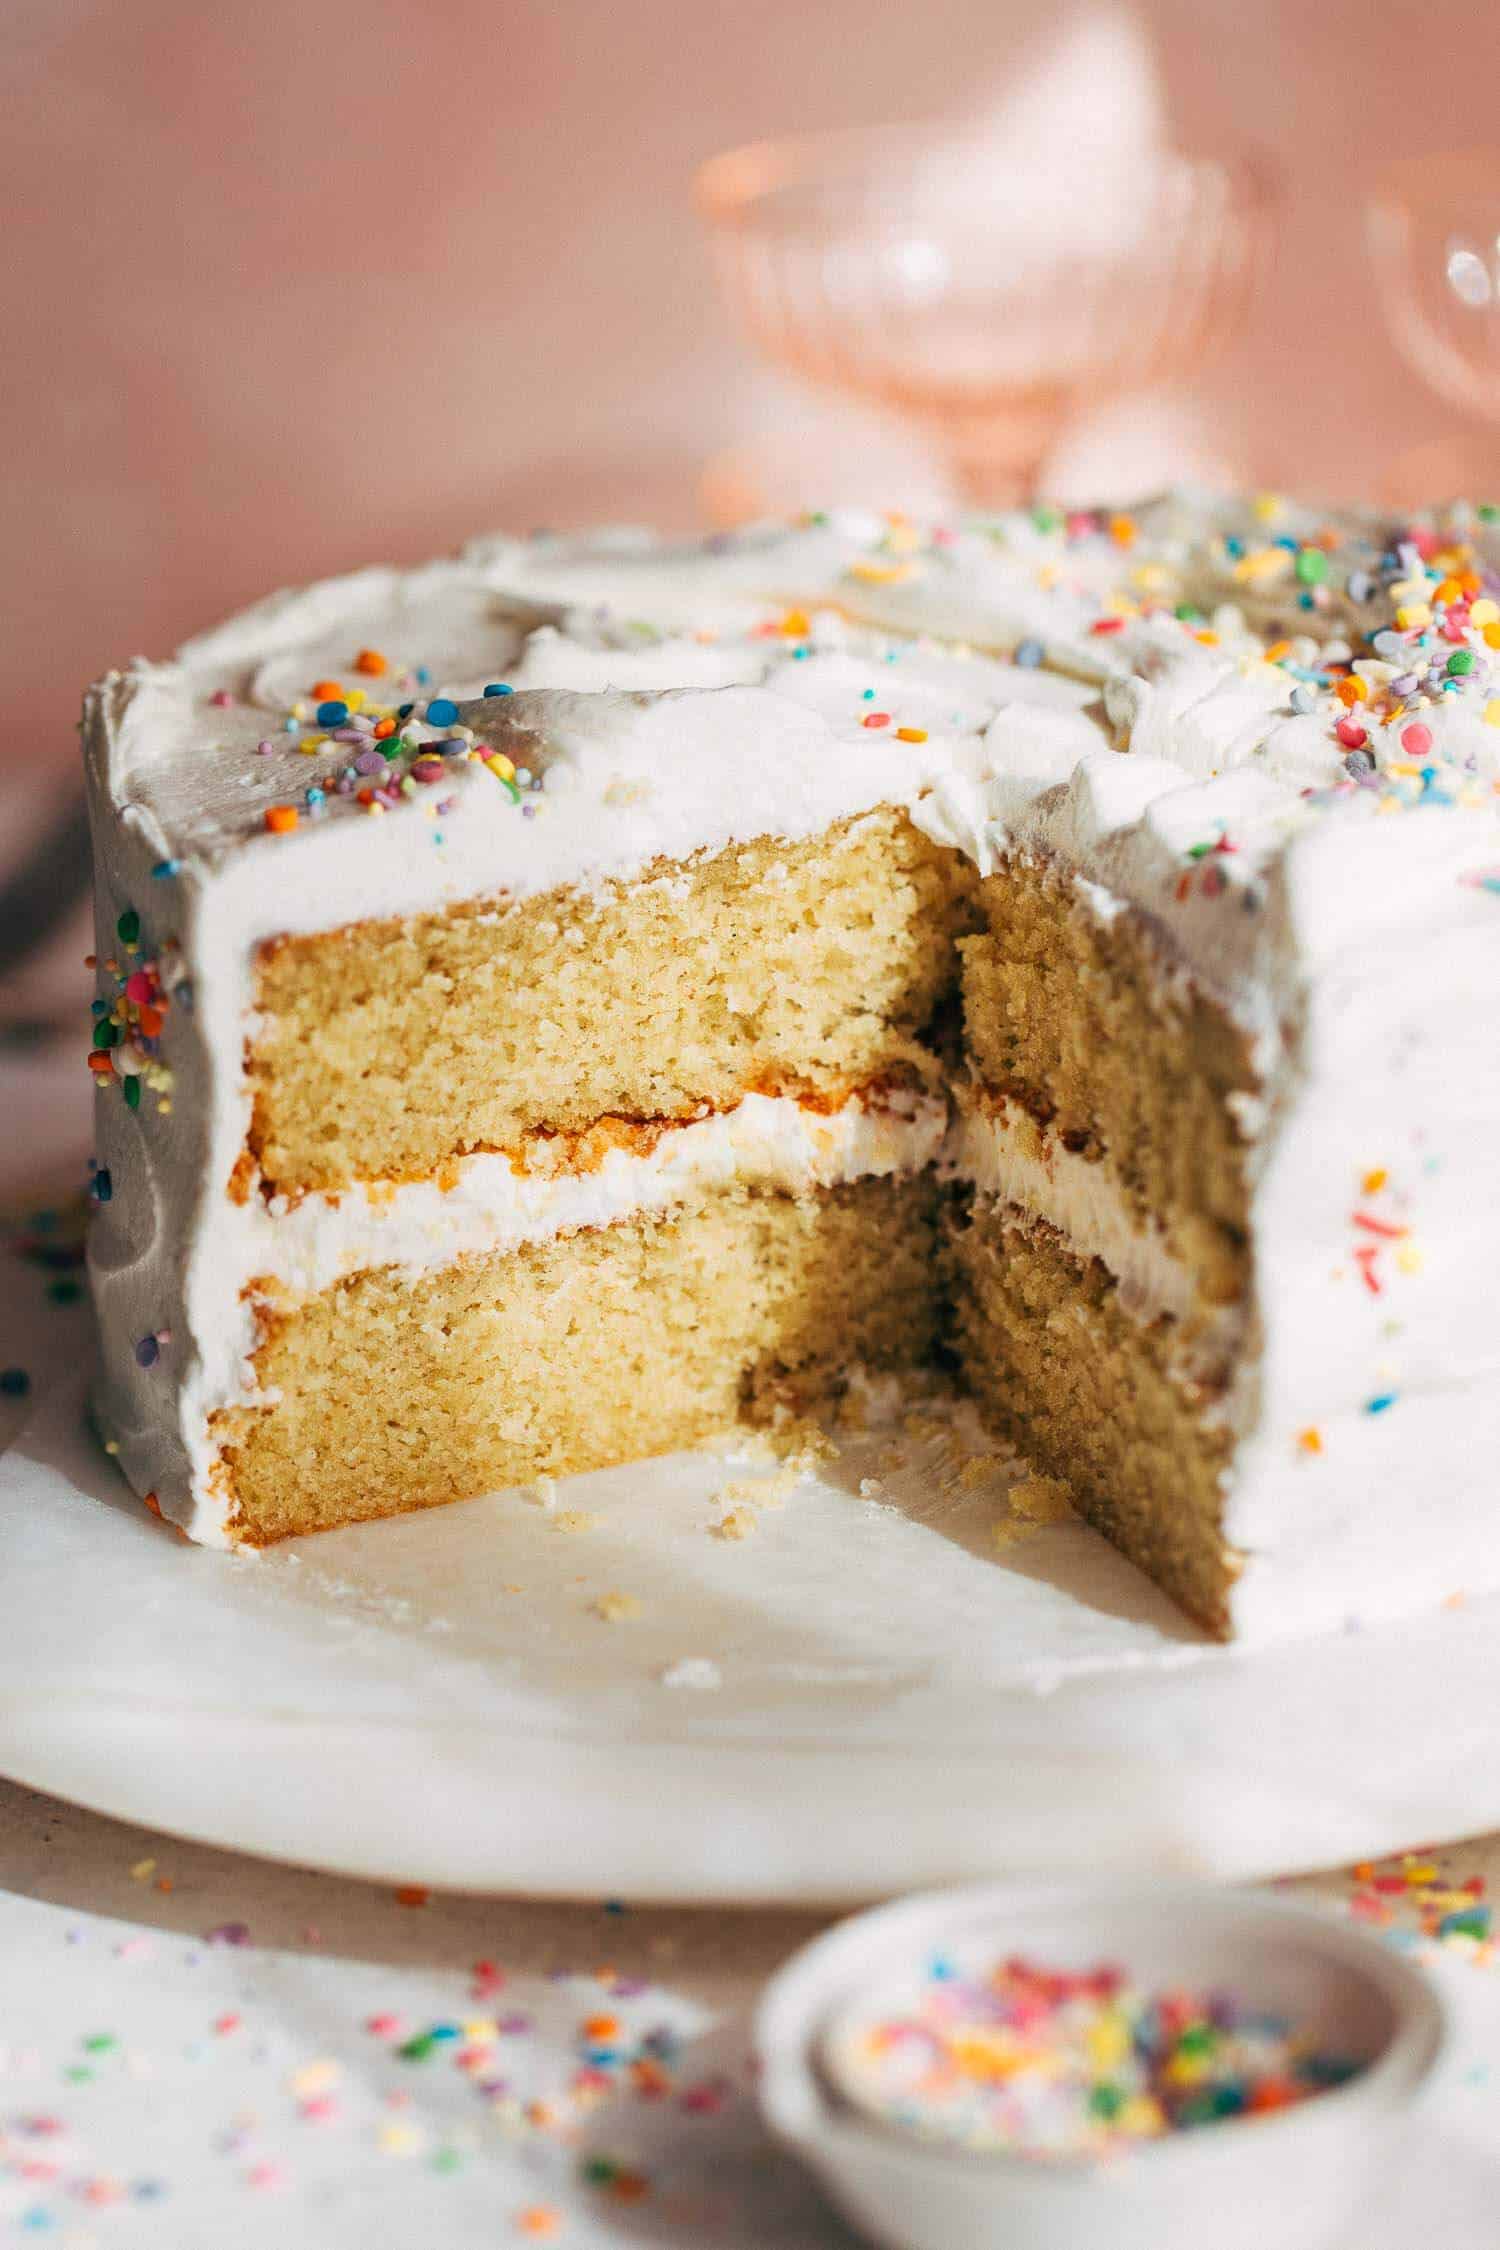 How to Make Homemade Cake Mix